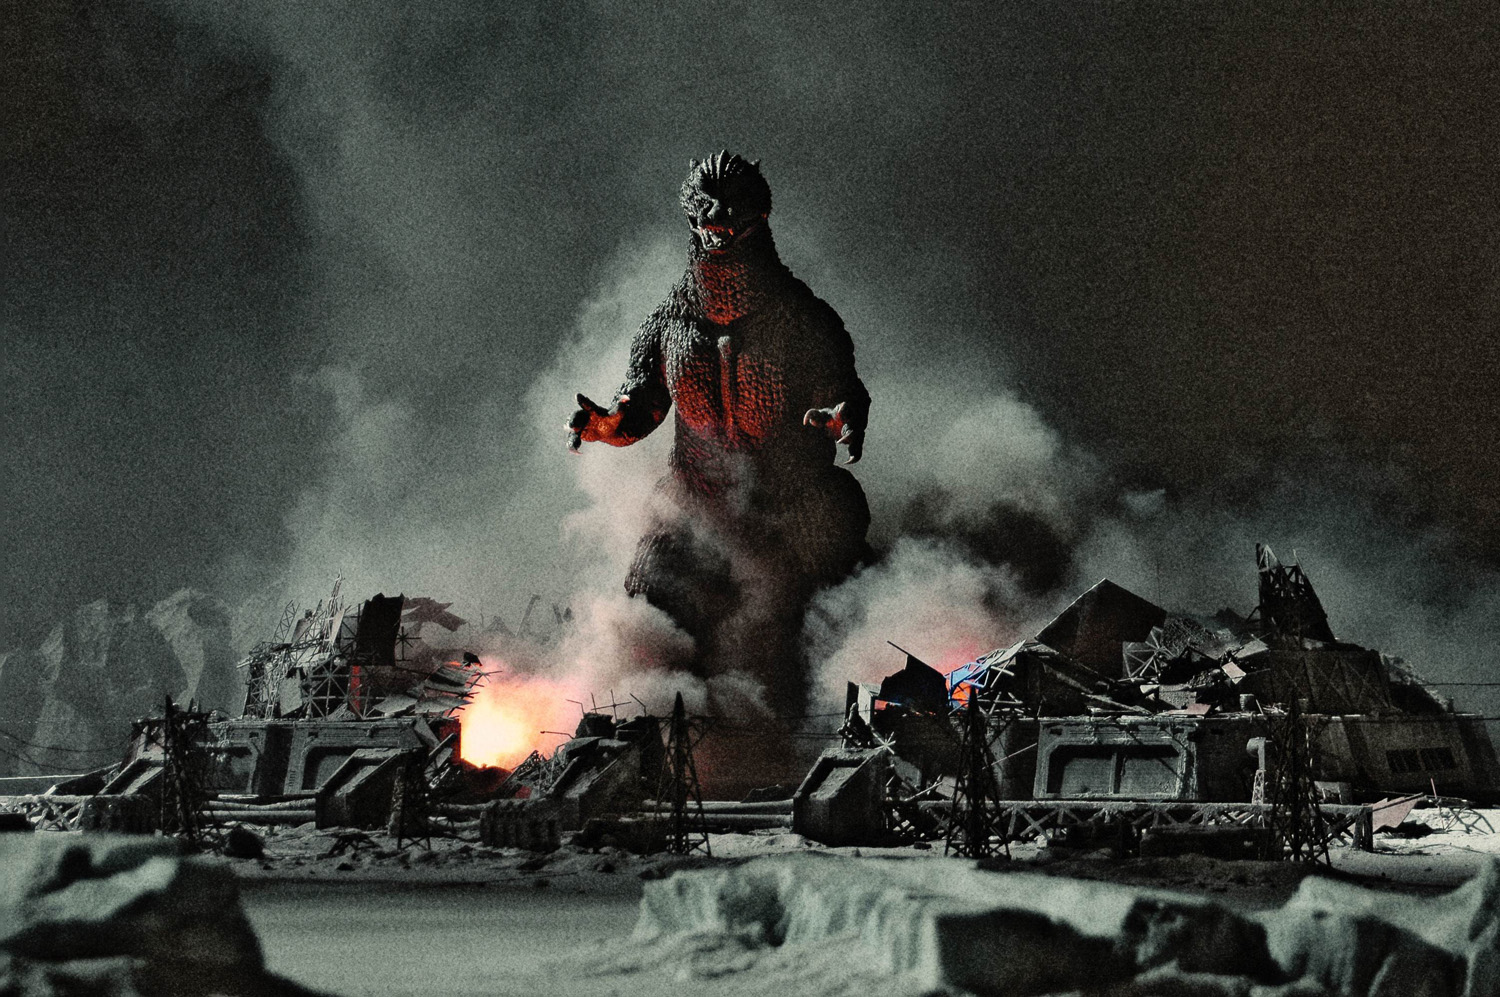 Godzilla (1954) Picture